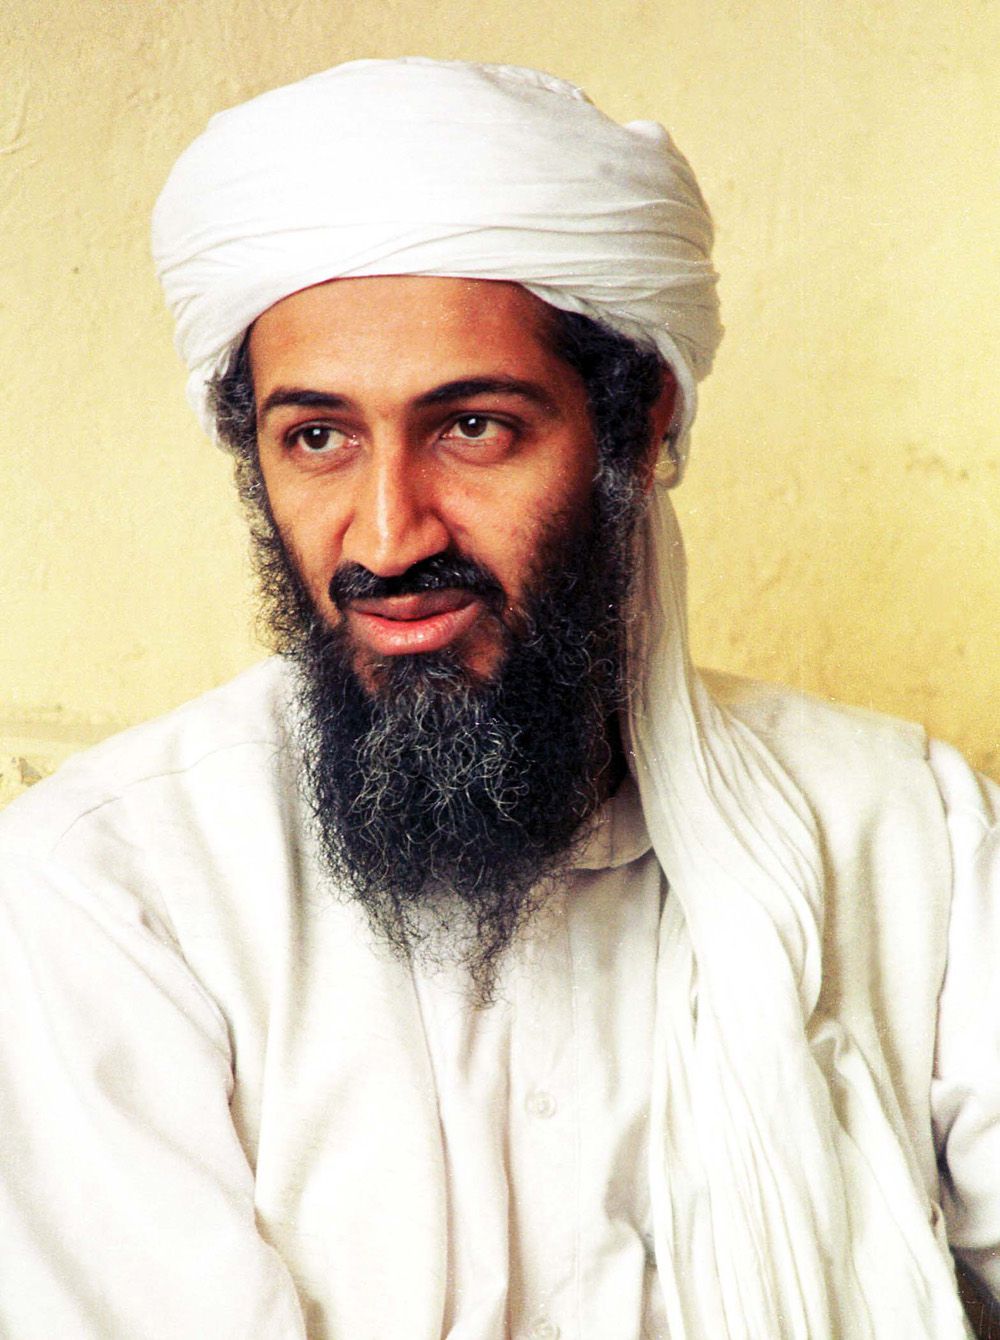 Osama bin Laden fotója került ki a Leeds stadionjába./ Fotó: Northfoto